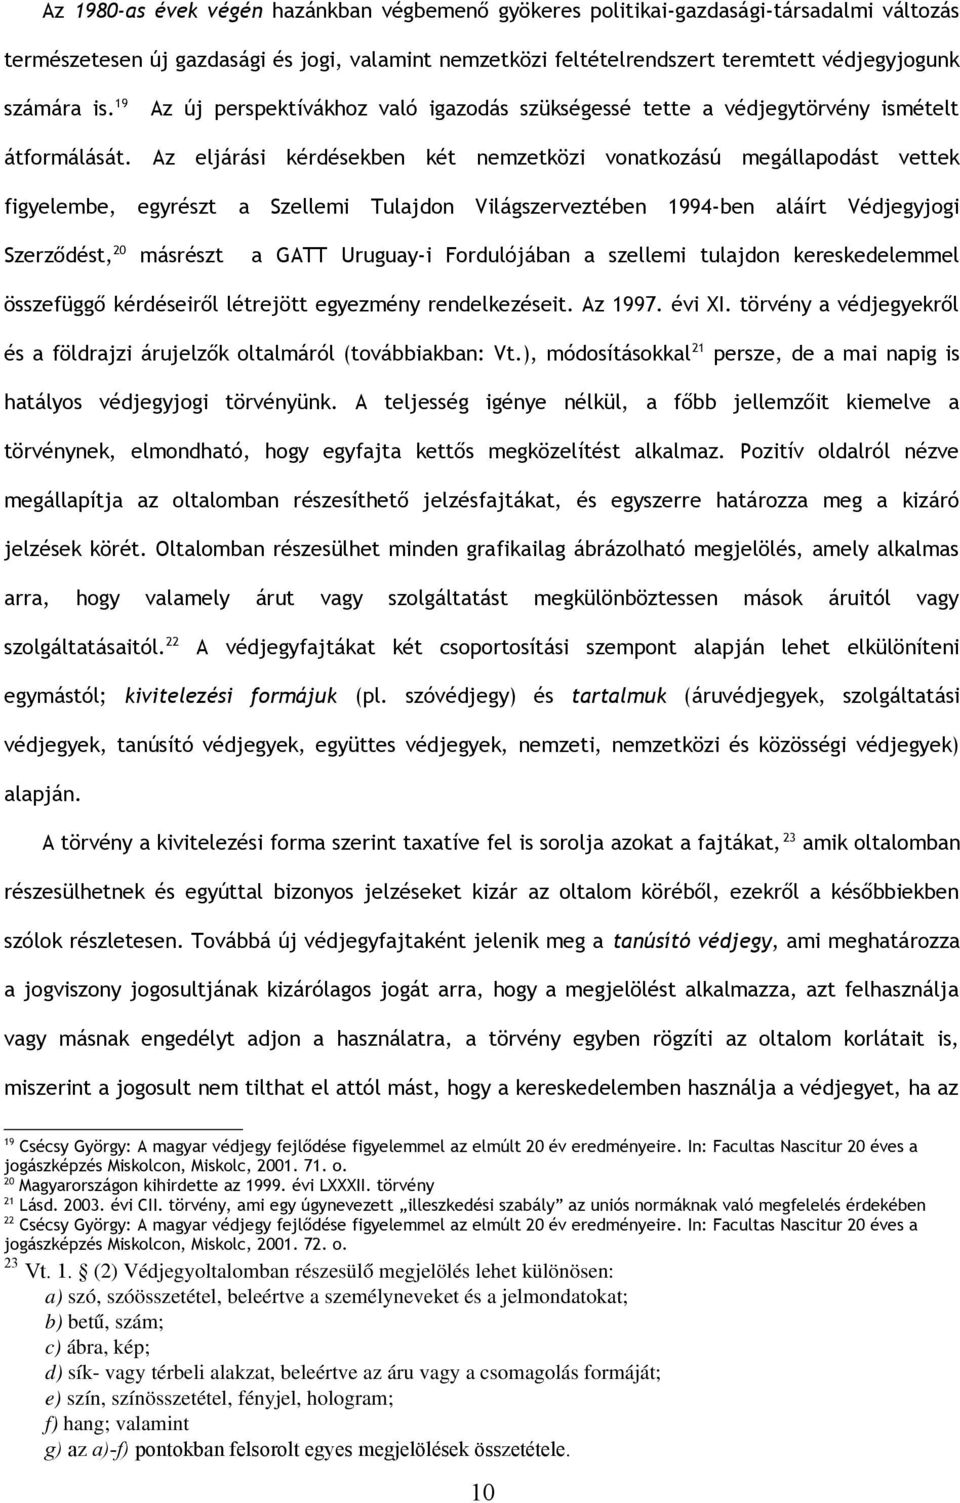 Az eljárási kérdésekben két nemzetközi vonatkozású megállapodást vettek figyelembe, egyrészt a Szellemi Tulajdon Világszerveztében 1994-ben aláírt Védjegyjogi Szerződést, 20 másrészt a GATT Uruguay-i